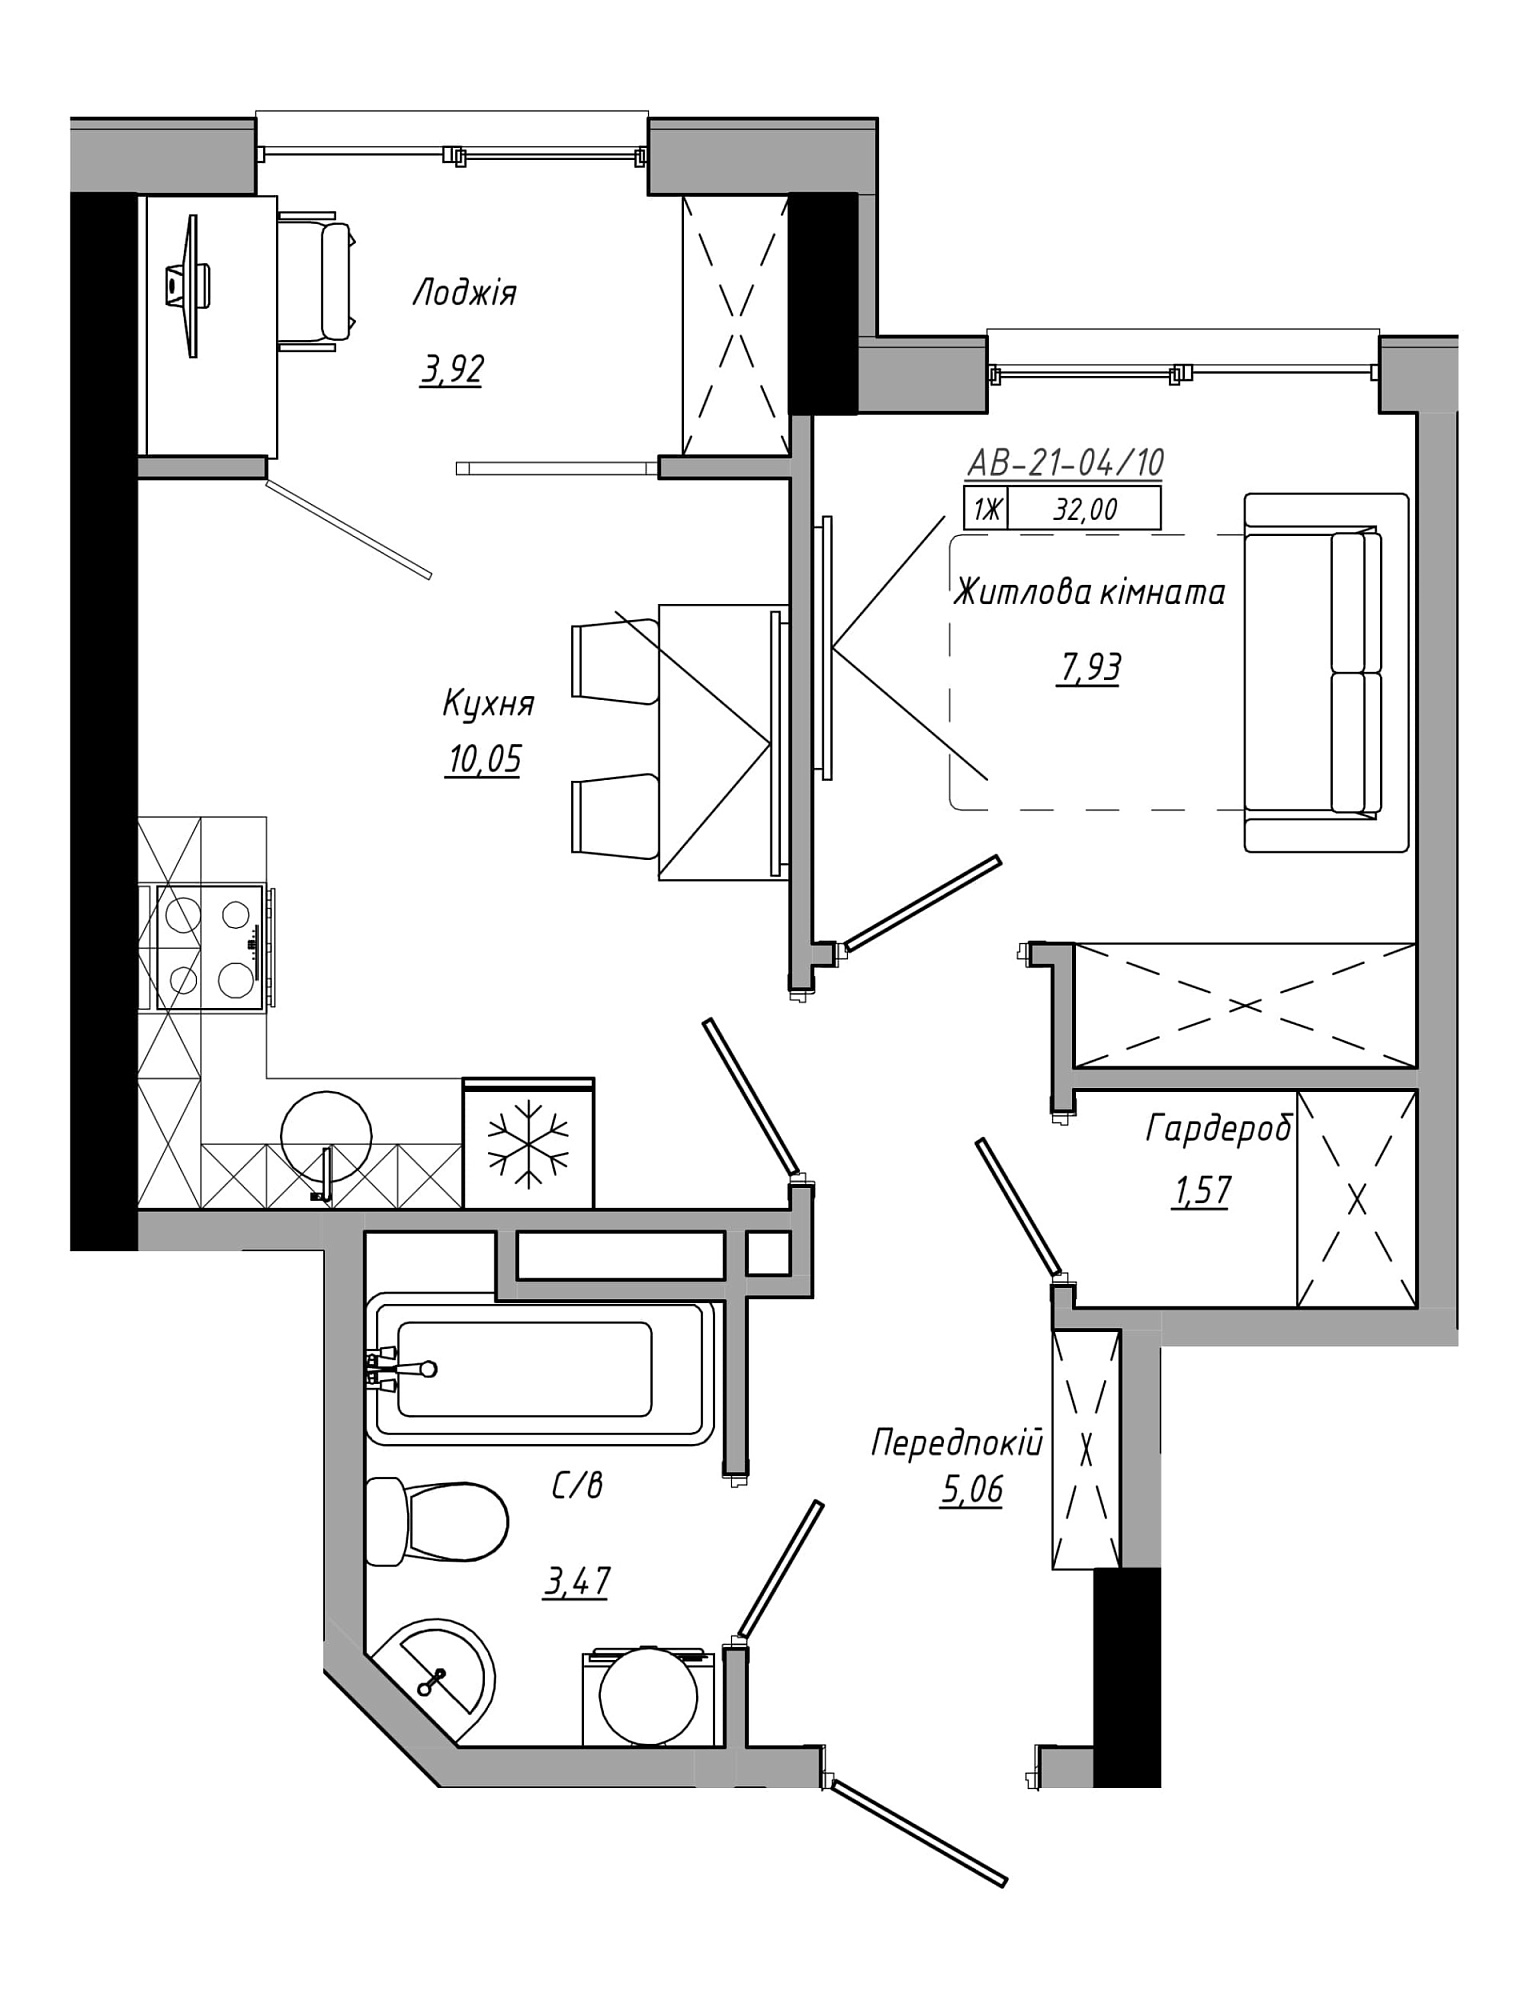 Планировка 1-к квартира площей 32м2, AB-21-04/00010.